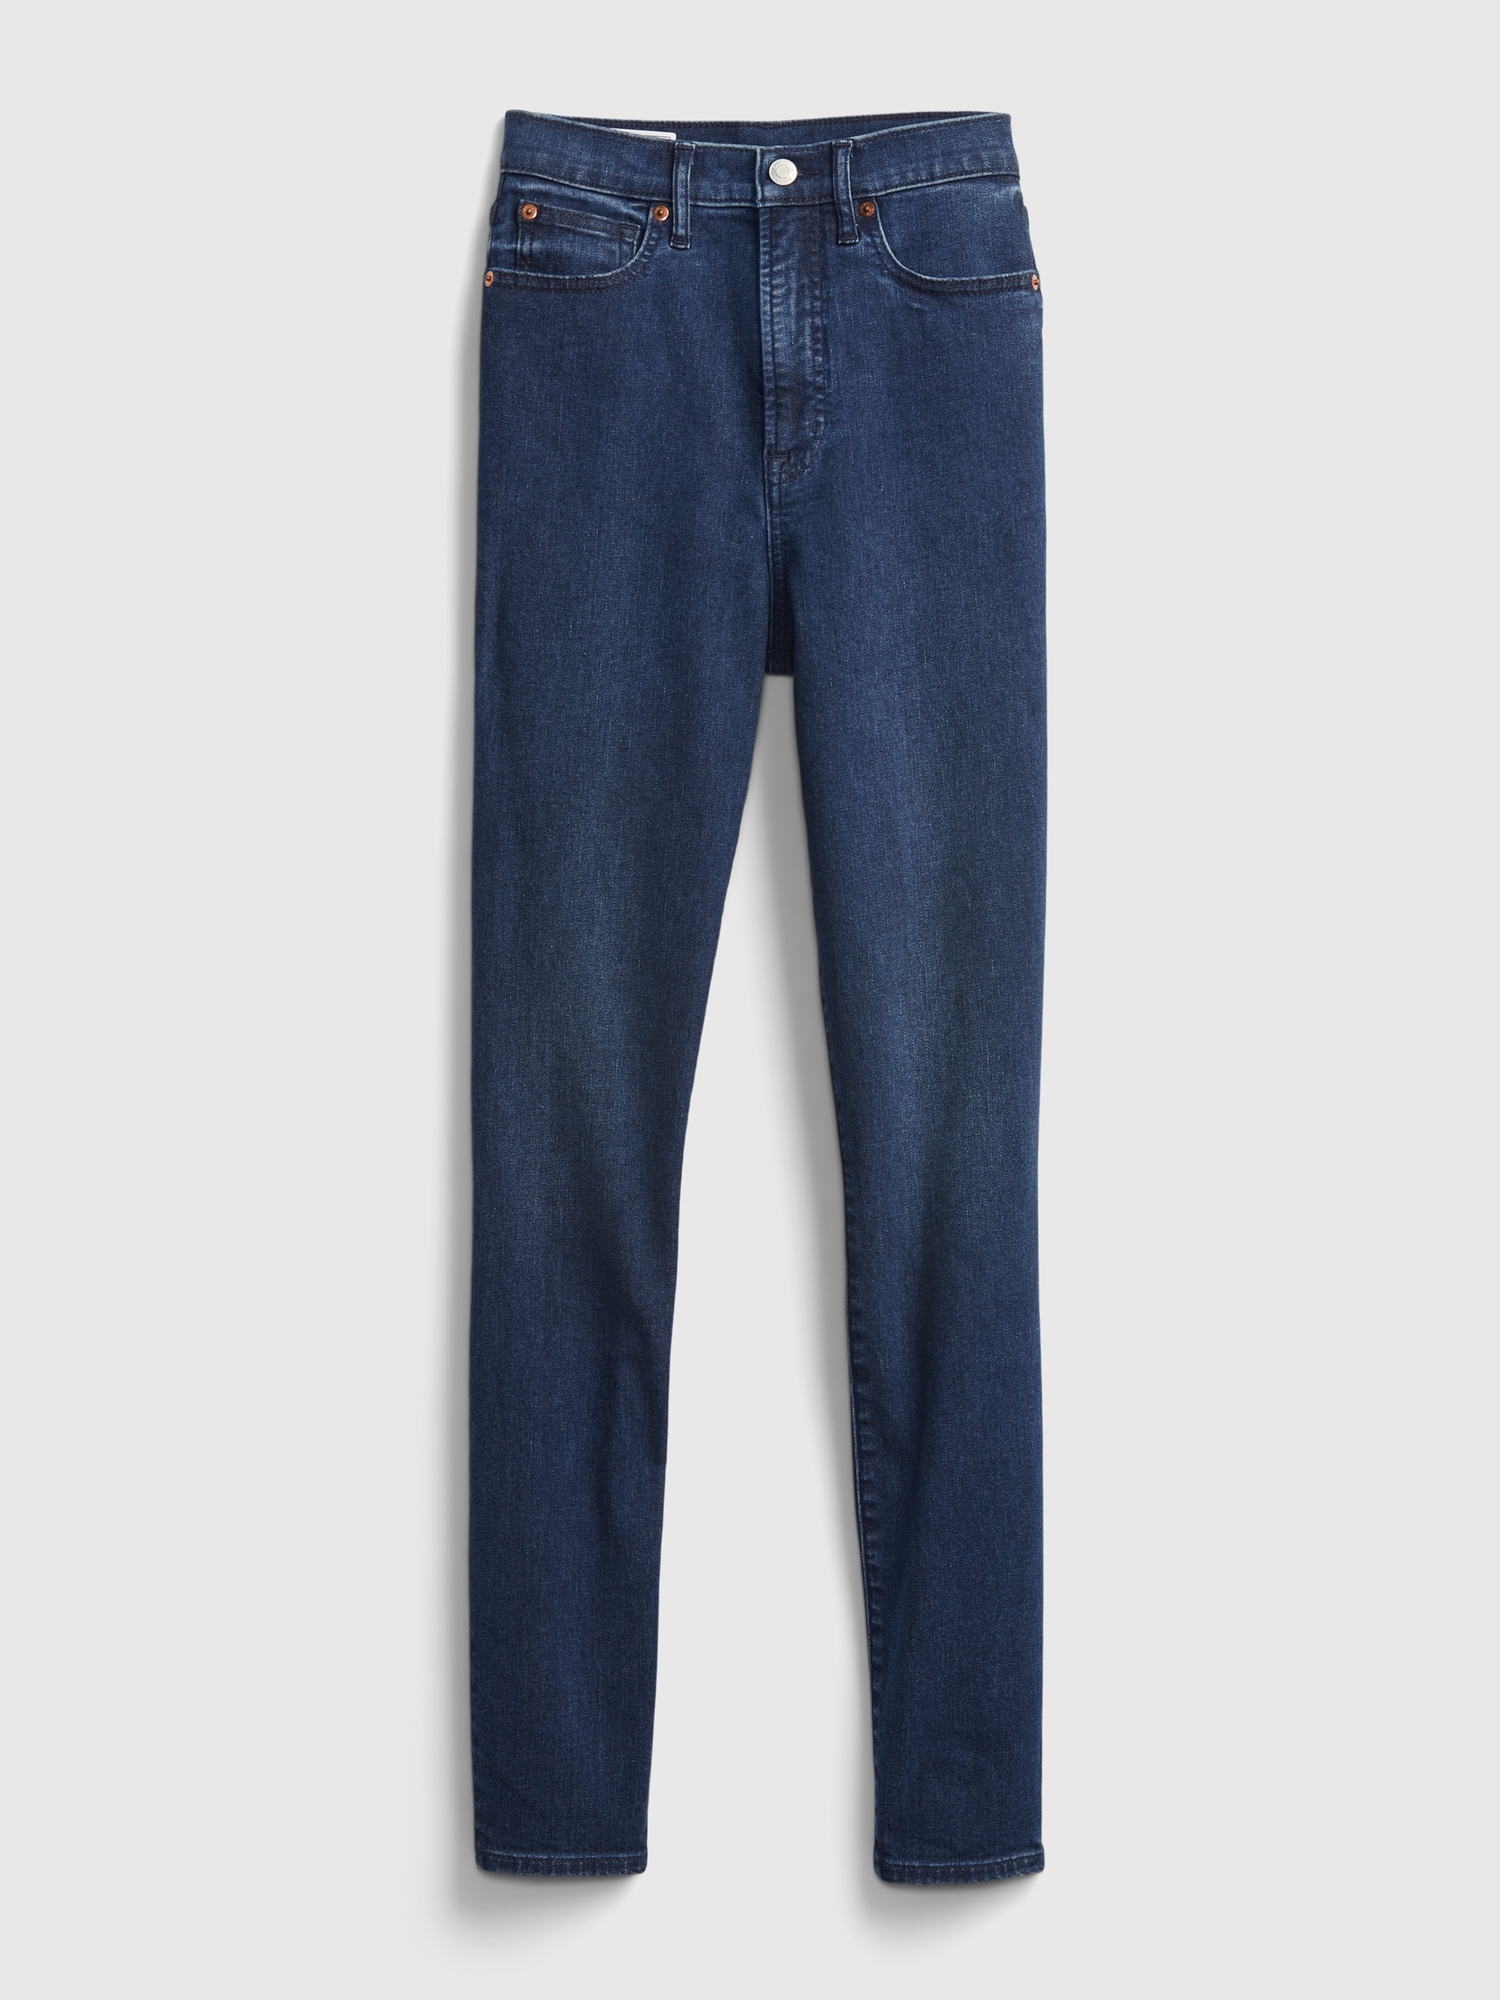 NWT Gap Dark Wash High Rise True Skinny Jeans Soft Wear Stretch Denim 27 R